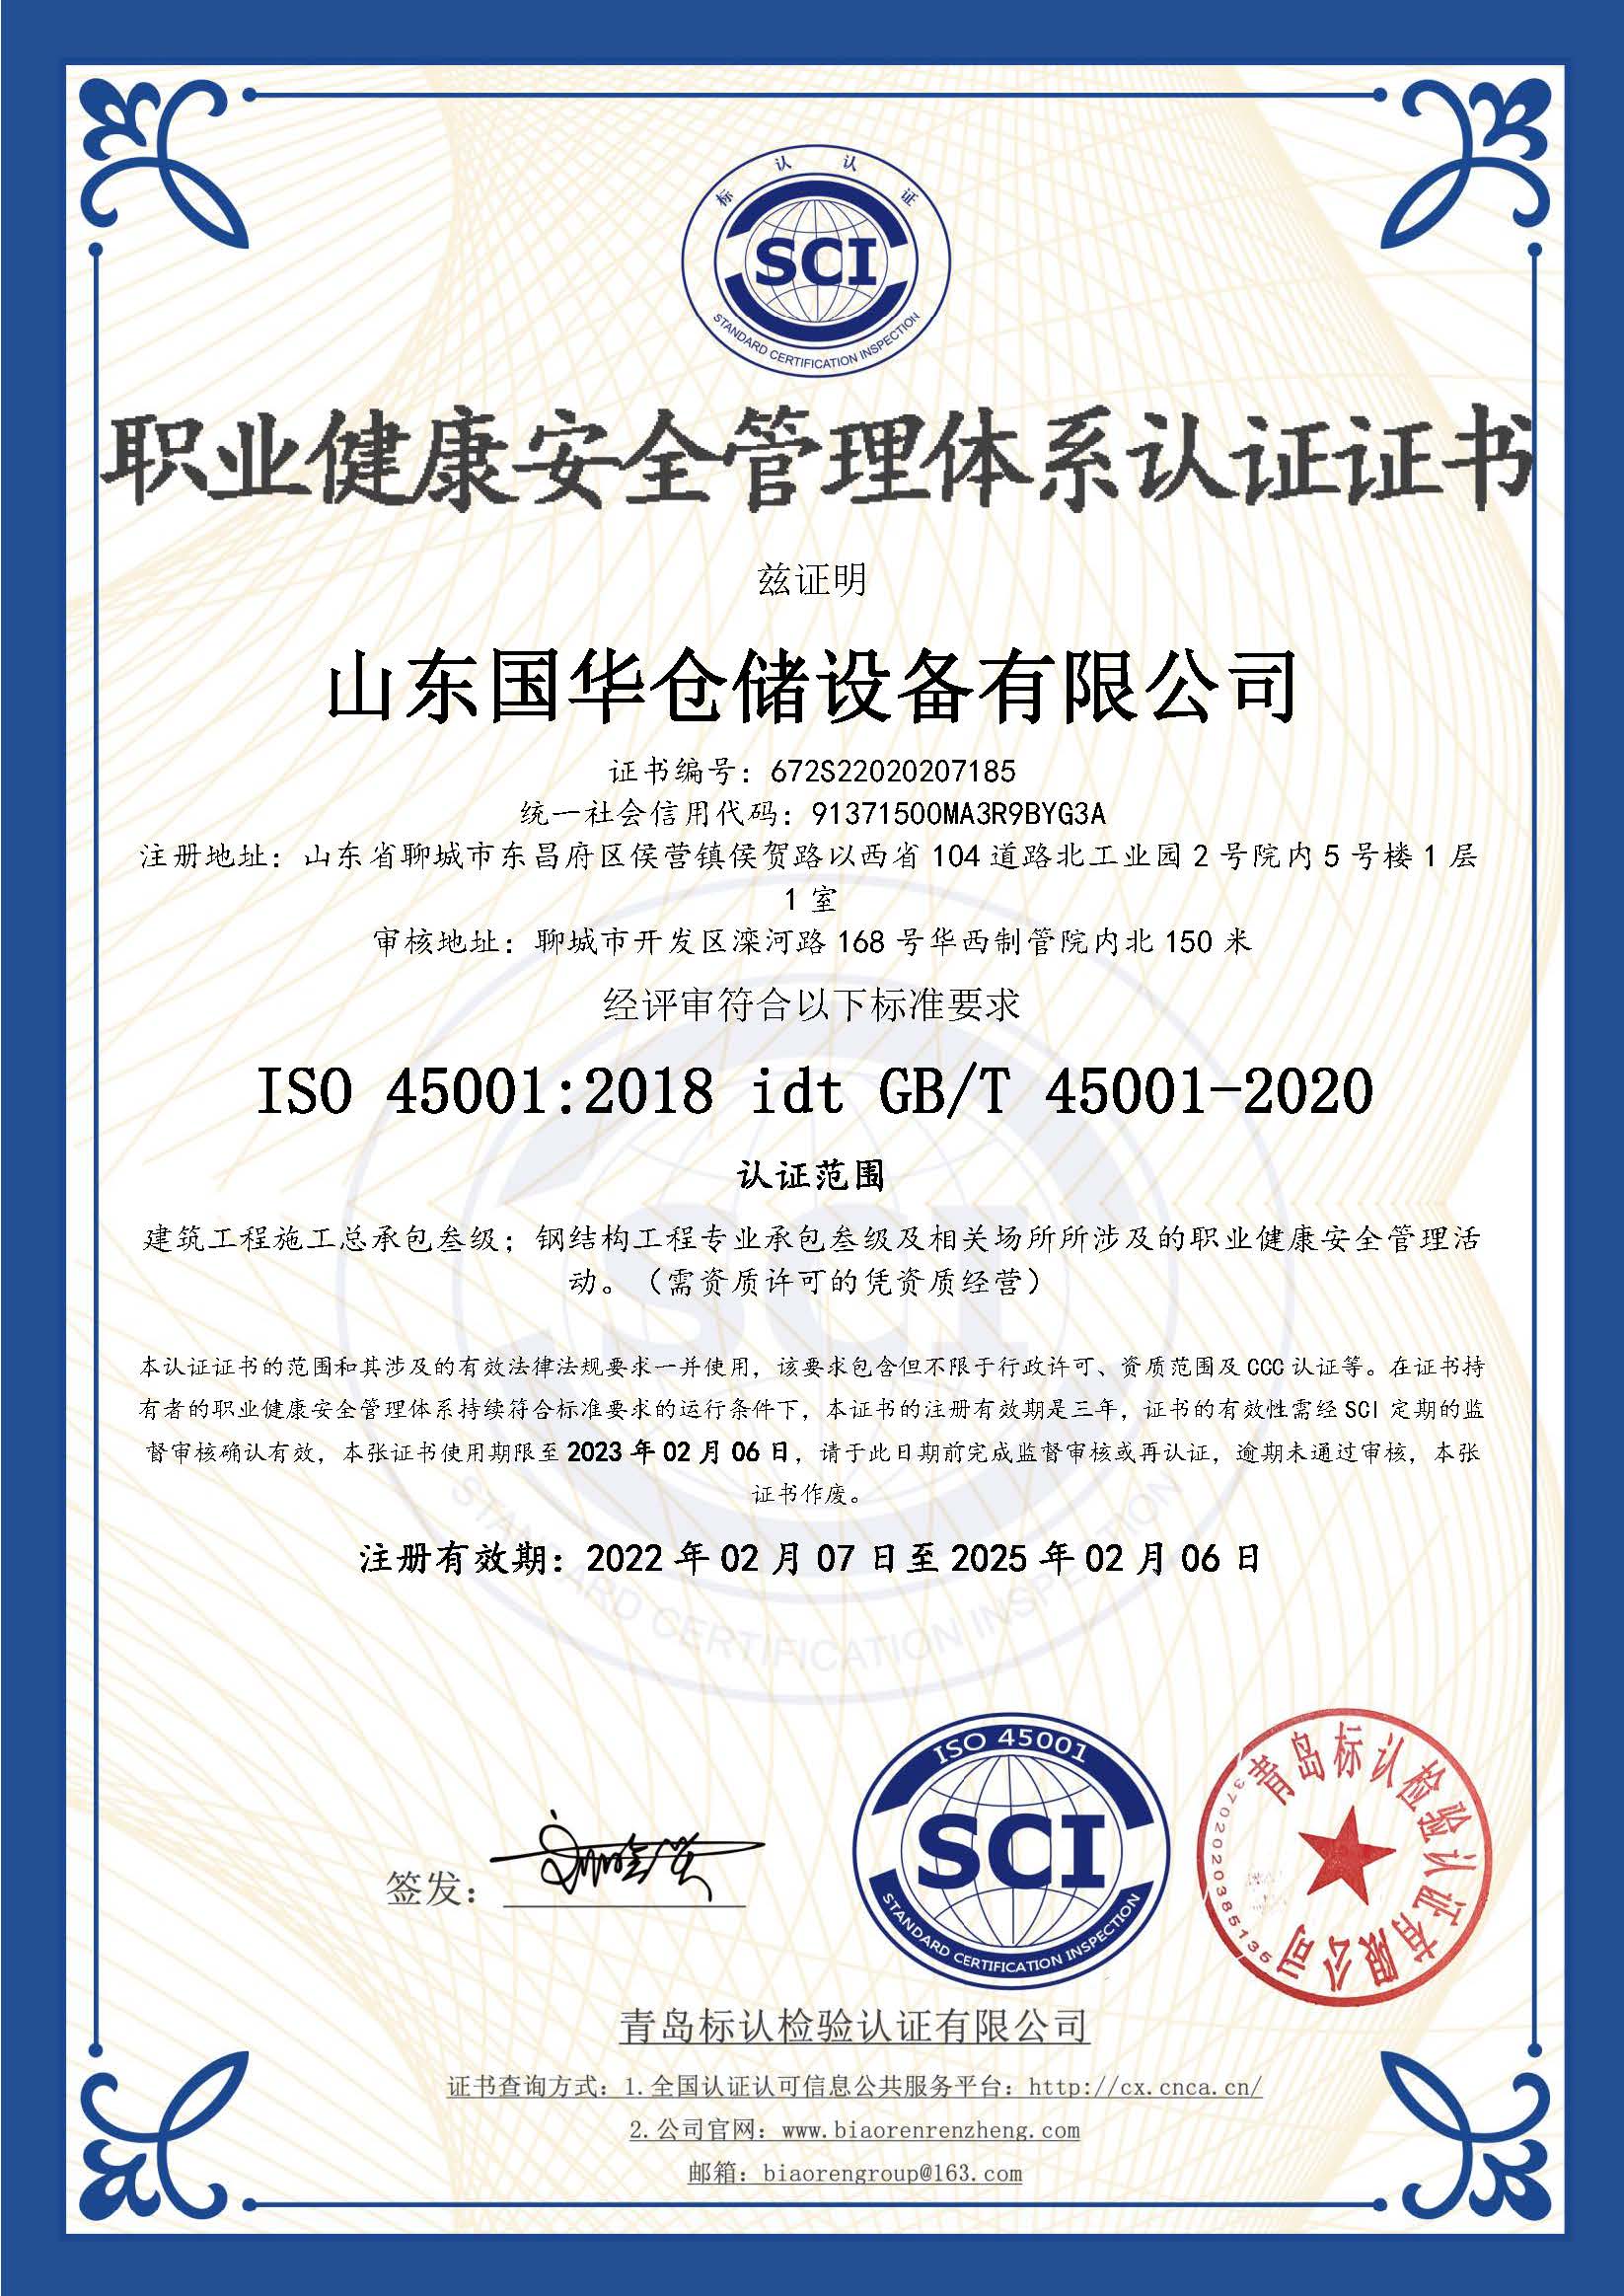 锡林郭勒钢板仓职业健康安全管理体系认证证书